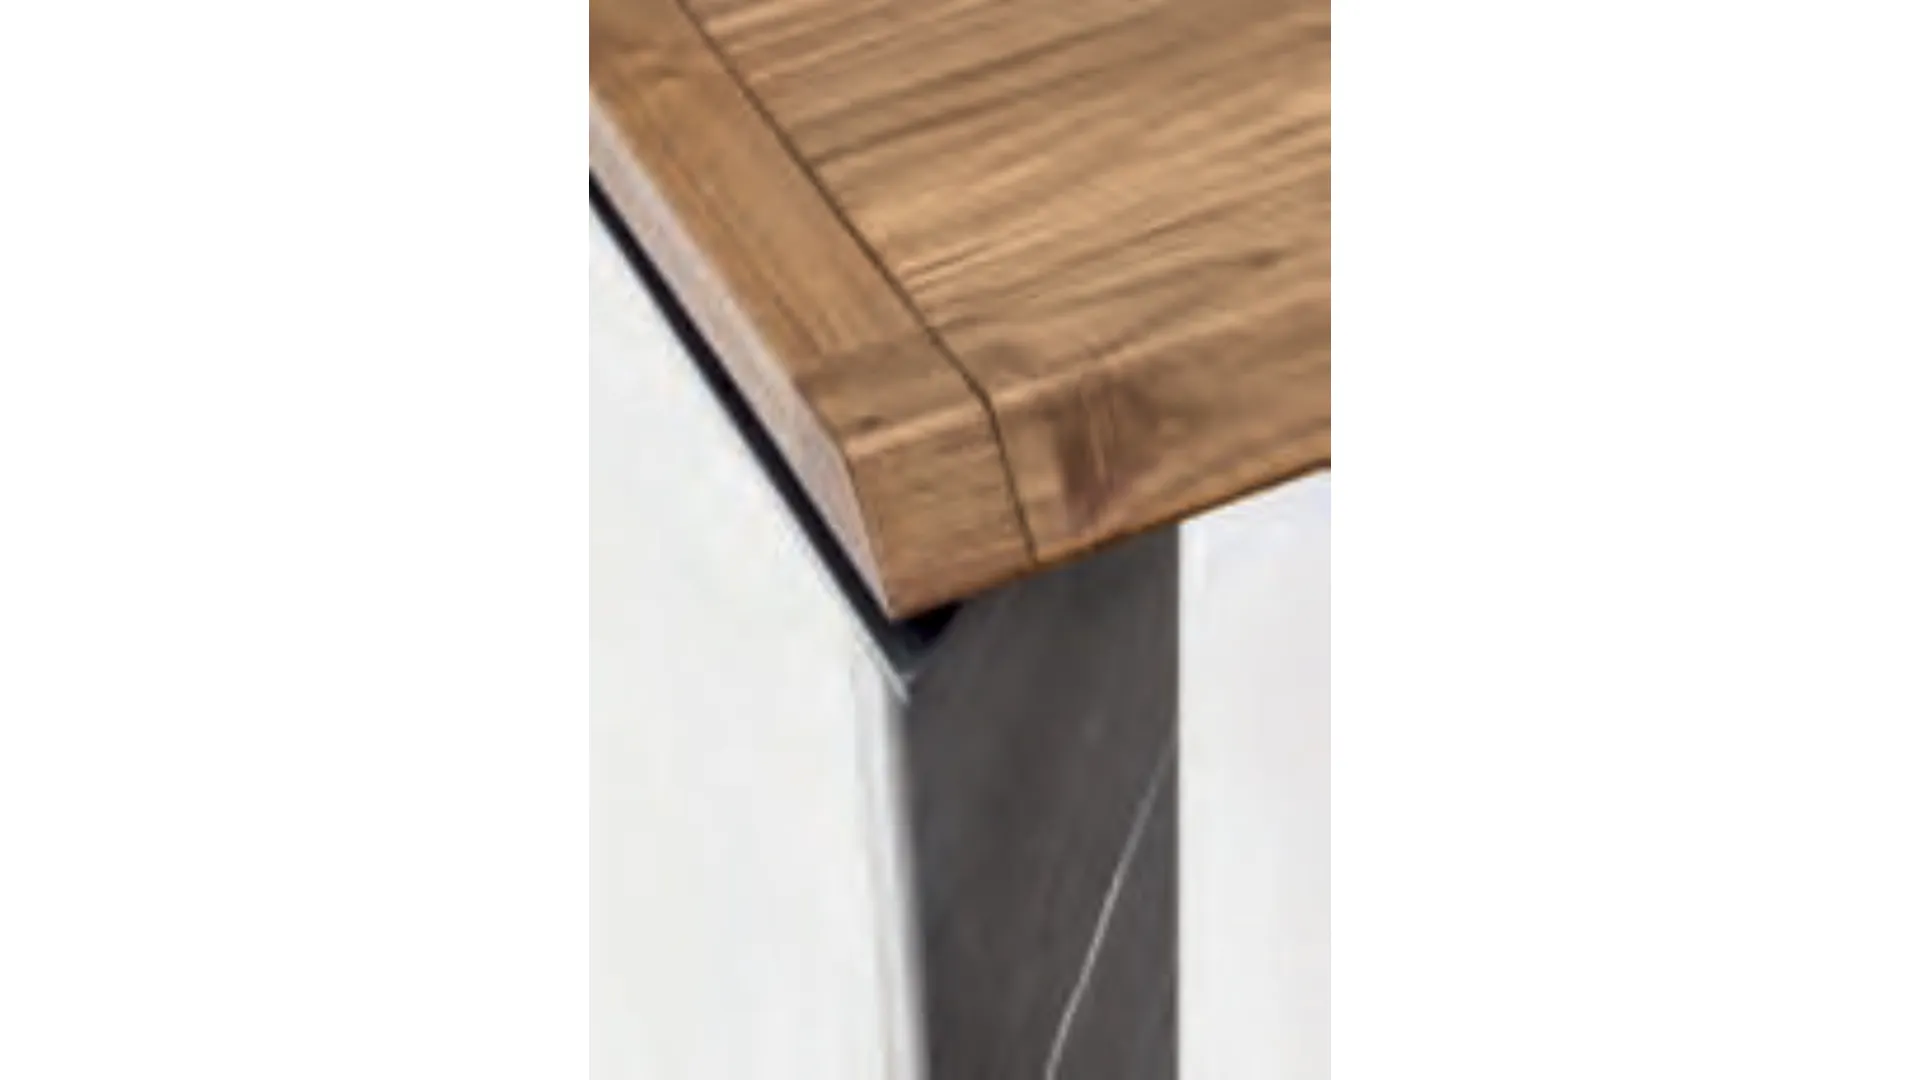 Table of tonin Casa modello Roma extensible wooden top